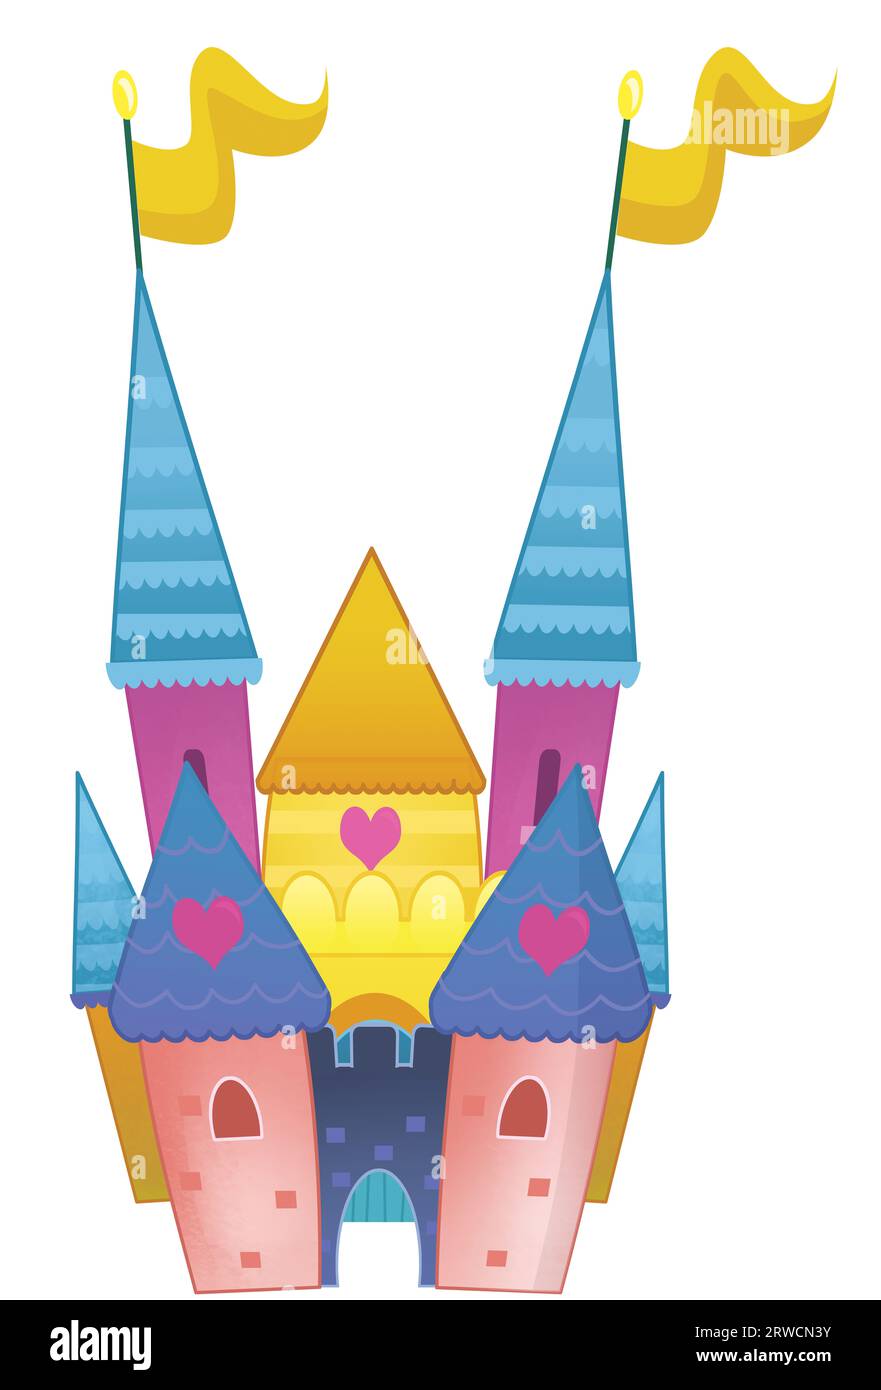 cartoni animati bellissimo e colorato castello medievale, illustrazione isolata per bambini Foto Stock